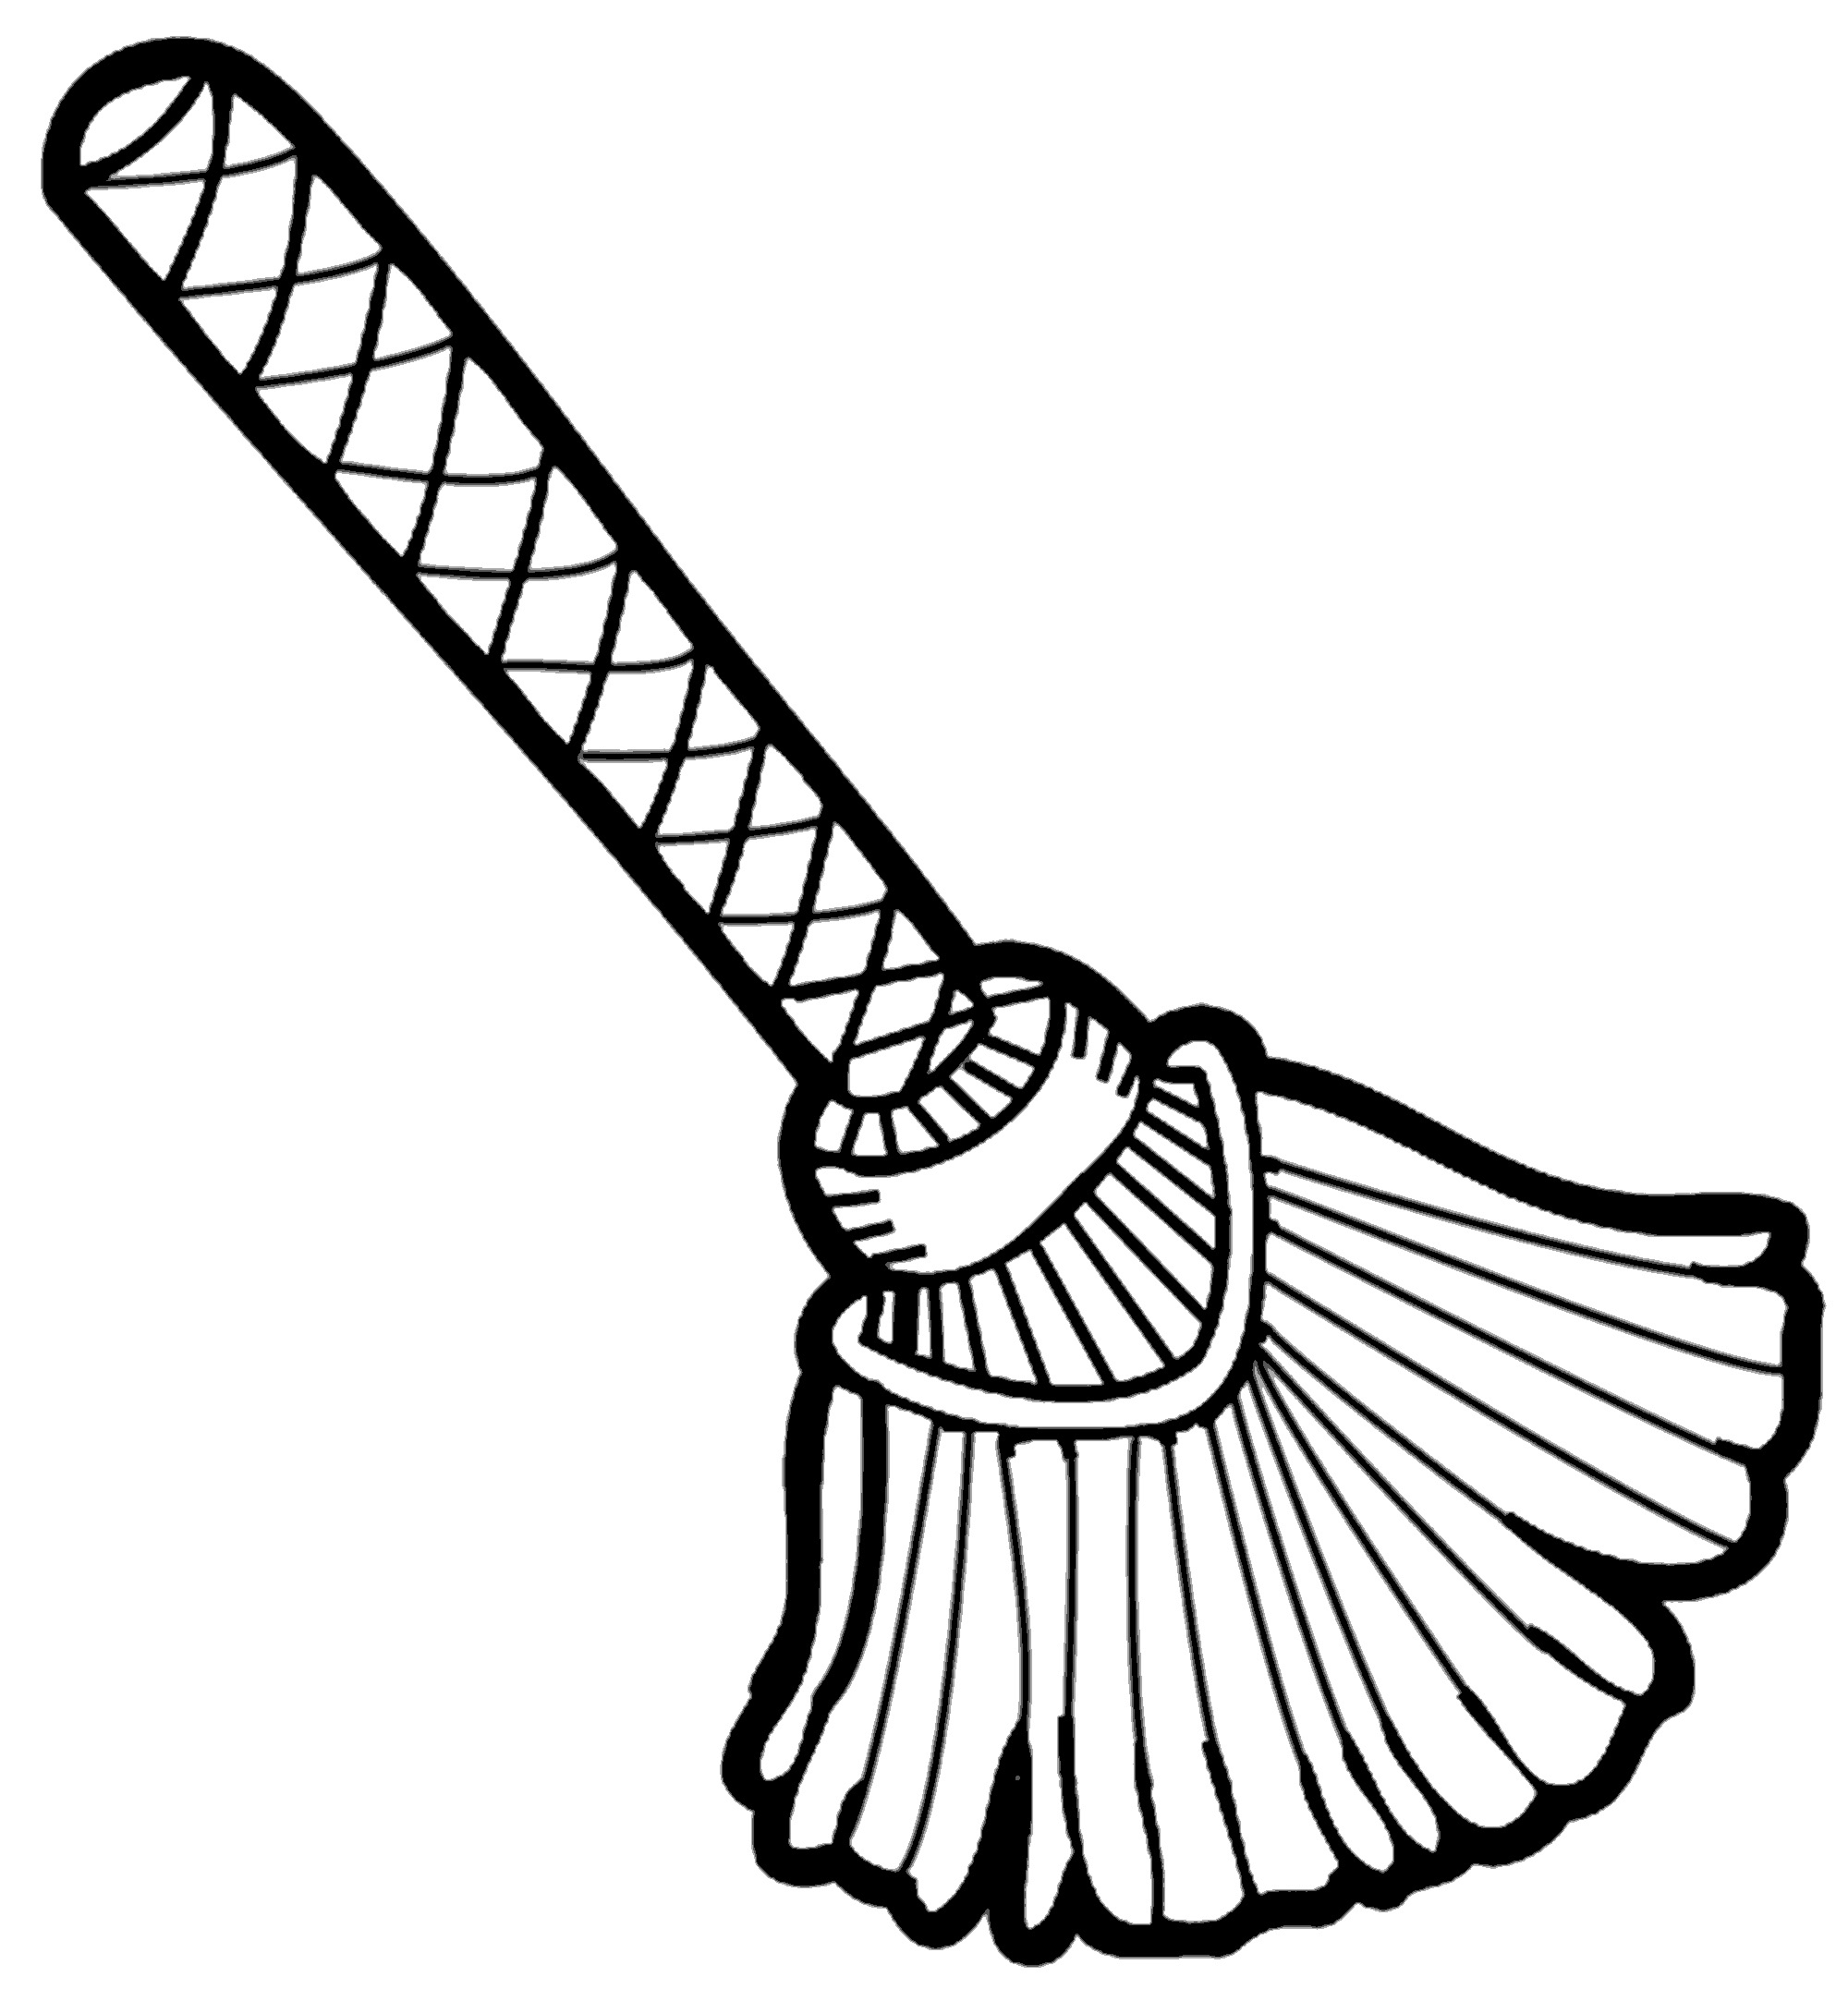 Broom Clip Art - .